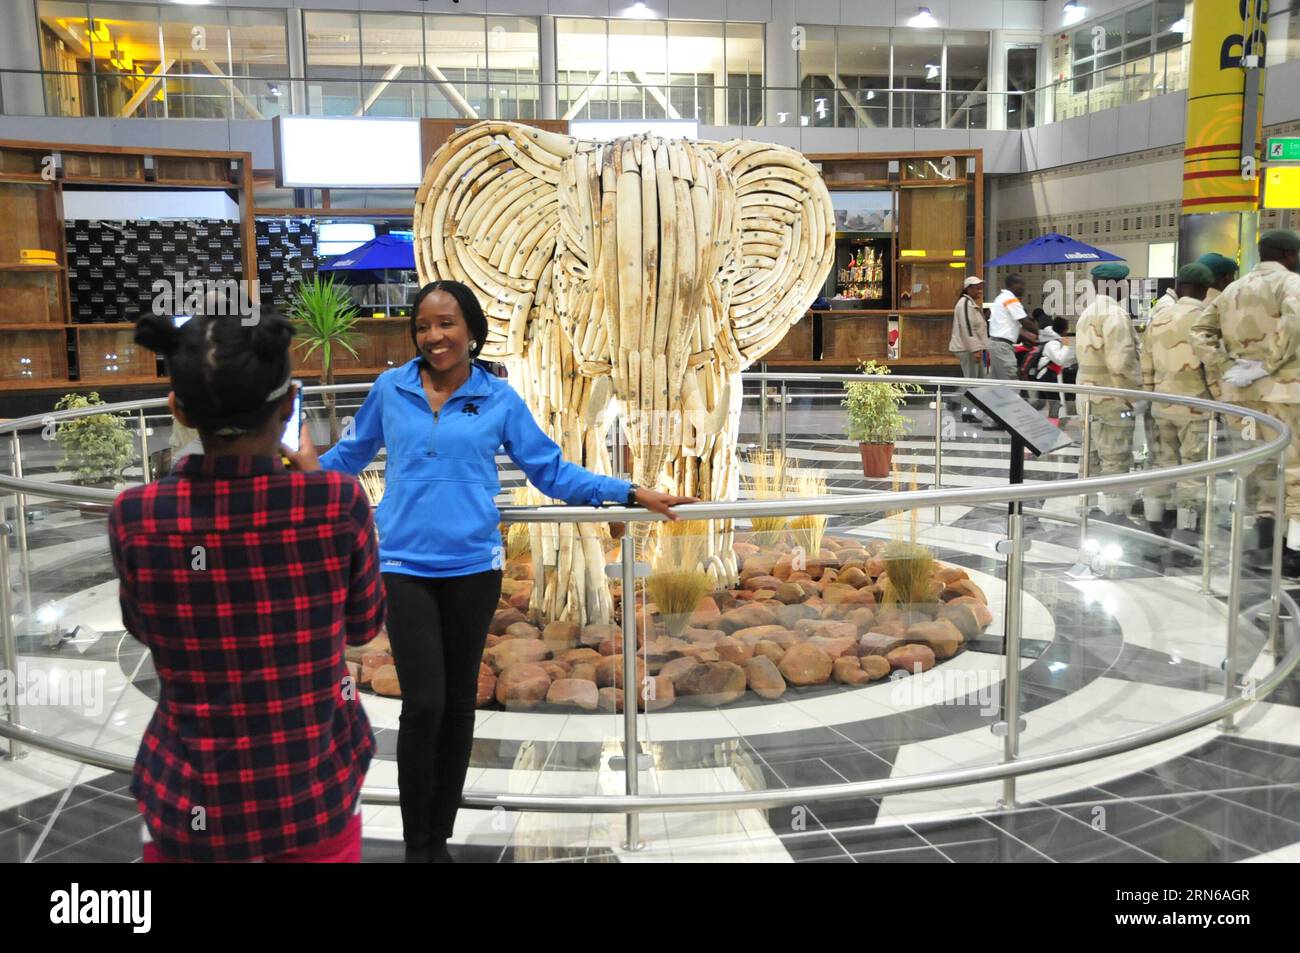 (150717) -- GABORONE, - Una donna posa per foto davanti a una scultura d'avorio all'aeroporto internazionale Sir Seretse Khama, a Gaborone, Botswana, il 16 luglio 2015. Giovedì il presidente del Botswana Seretse Khama Ian Khama ha svelato la scultura in avorio recuperata da elefanti morti in natura per dimostrare la posizione del Botswana nella protezione delle risorse naturali. BOTSWANA-GABORONE-IVORY SCULPTURE-UNVEILING LyuxTianran PUBLICATIONxNOTxINxCHN 150717 Gaborone una donna posa per le foto di fronte alla scultura avorio PRESSO L'aeroporto internazionale Sir SERETSE Khama di Gaborone in Botswana IL 1° luglio Foto Stock